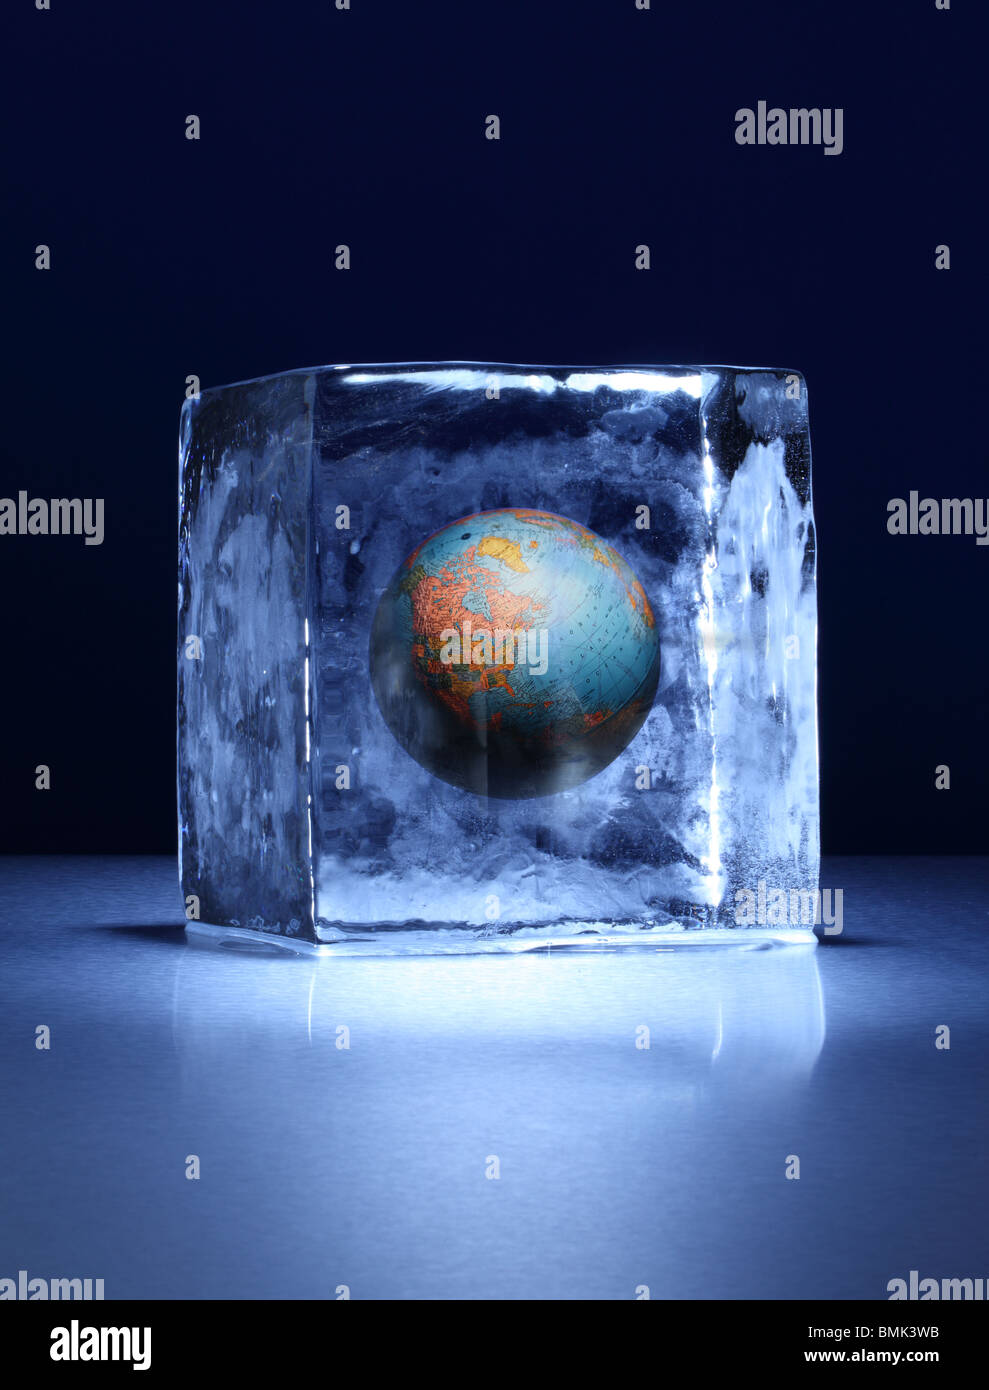 Un bloque congelado de hielo con un globo terráqueo congeladas por dentro sobre una superficie metálica Foto de stock